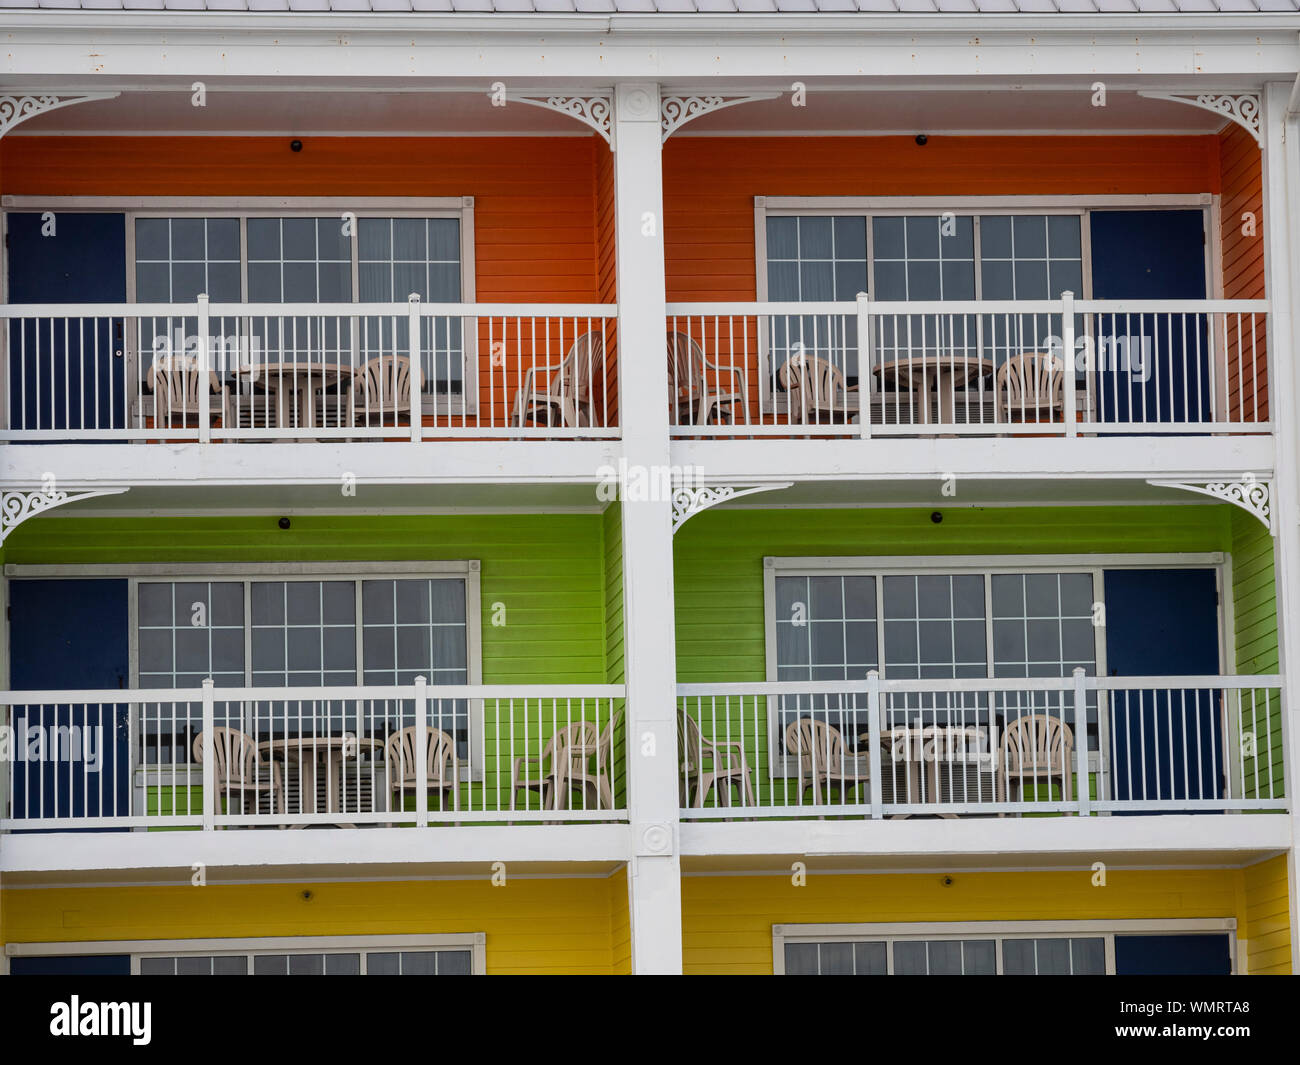 Détails de bâtiments colorés de Fort Myers Beach en Floride Banque D'Images